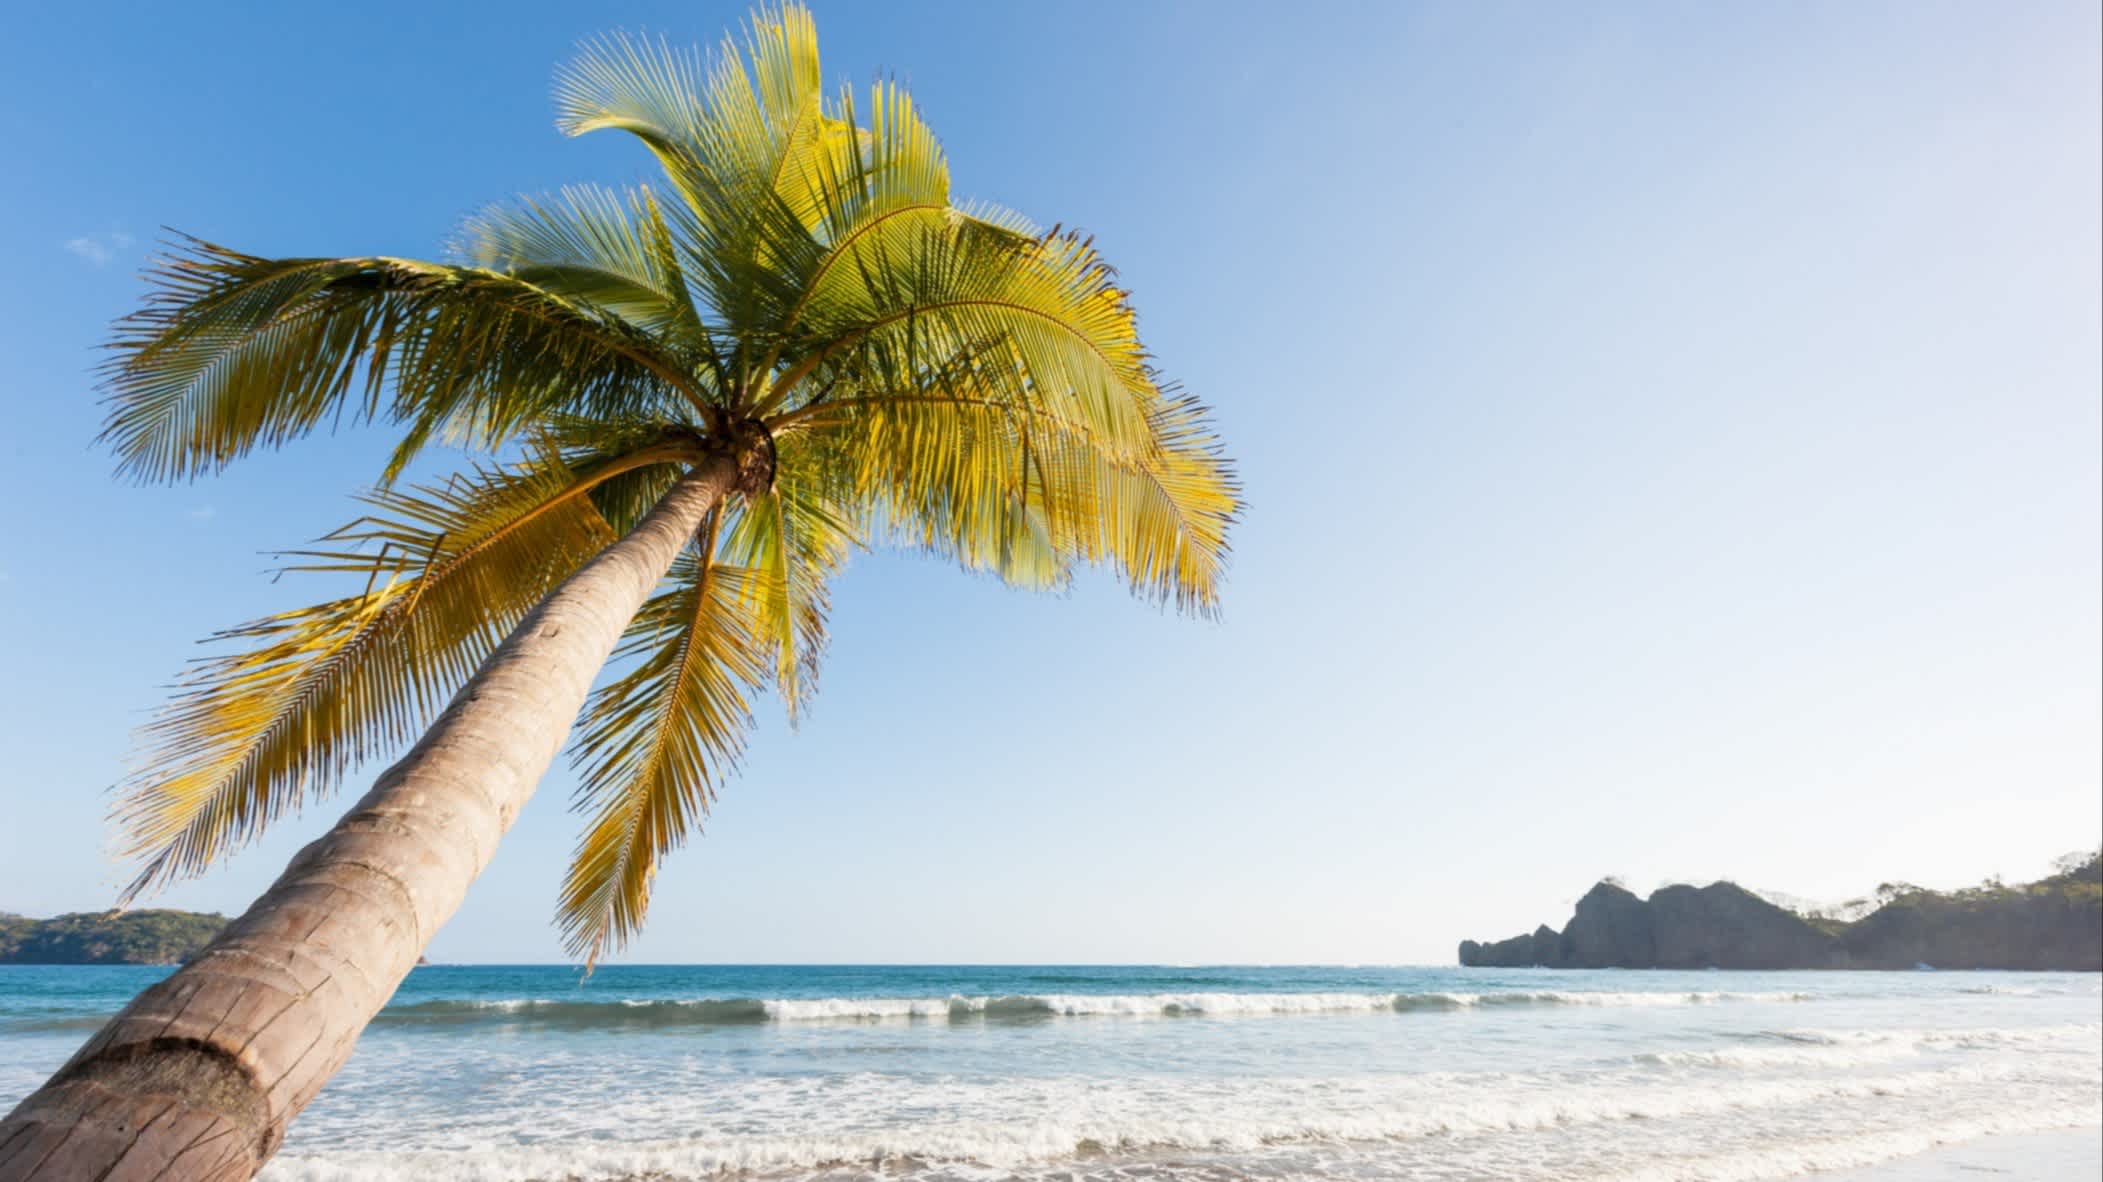 Tamarindos Strand in Guanacaste in Costa Rica mit einer wunderschönen Palme im Vordergrund, die zum Strand neigt und das blaue Meer, seichte Wellen und weißer Sand sowie Berge im Hintergrund.